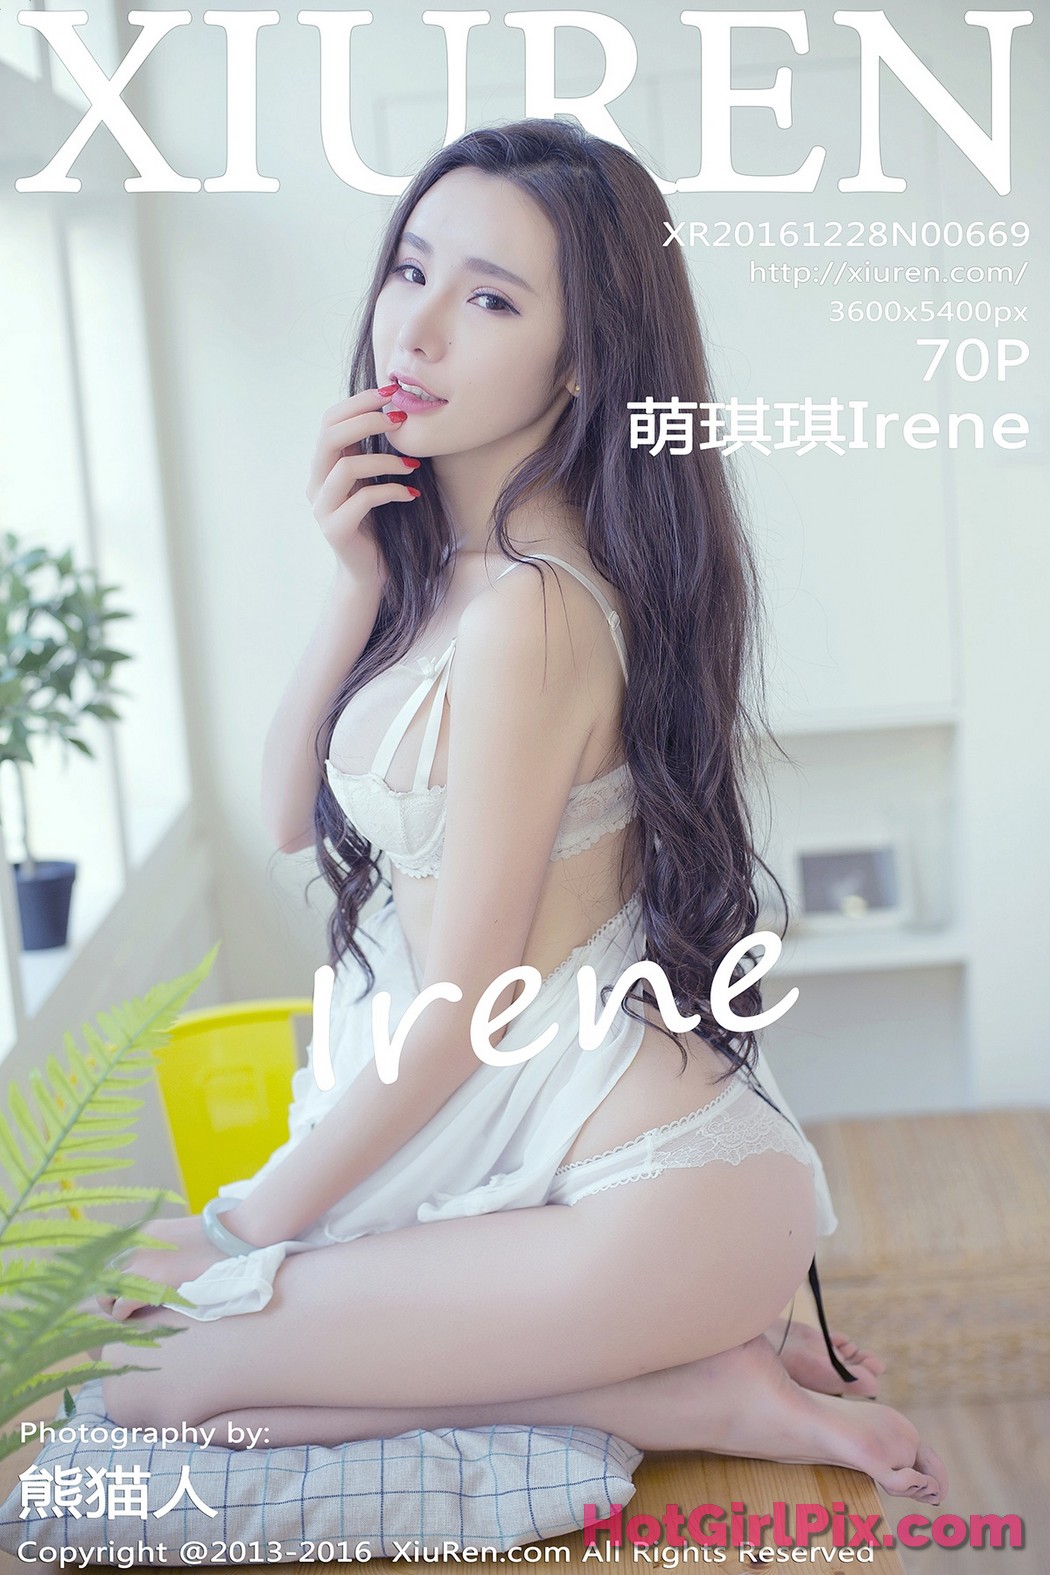 [XIUREN] No.669 Meng Qi Qi 萌琪琪Irene Cover Photo